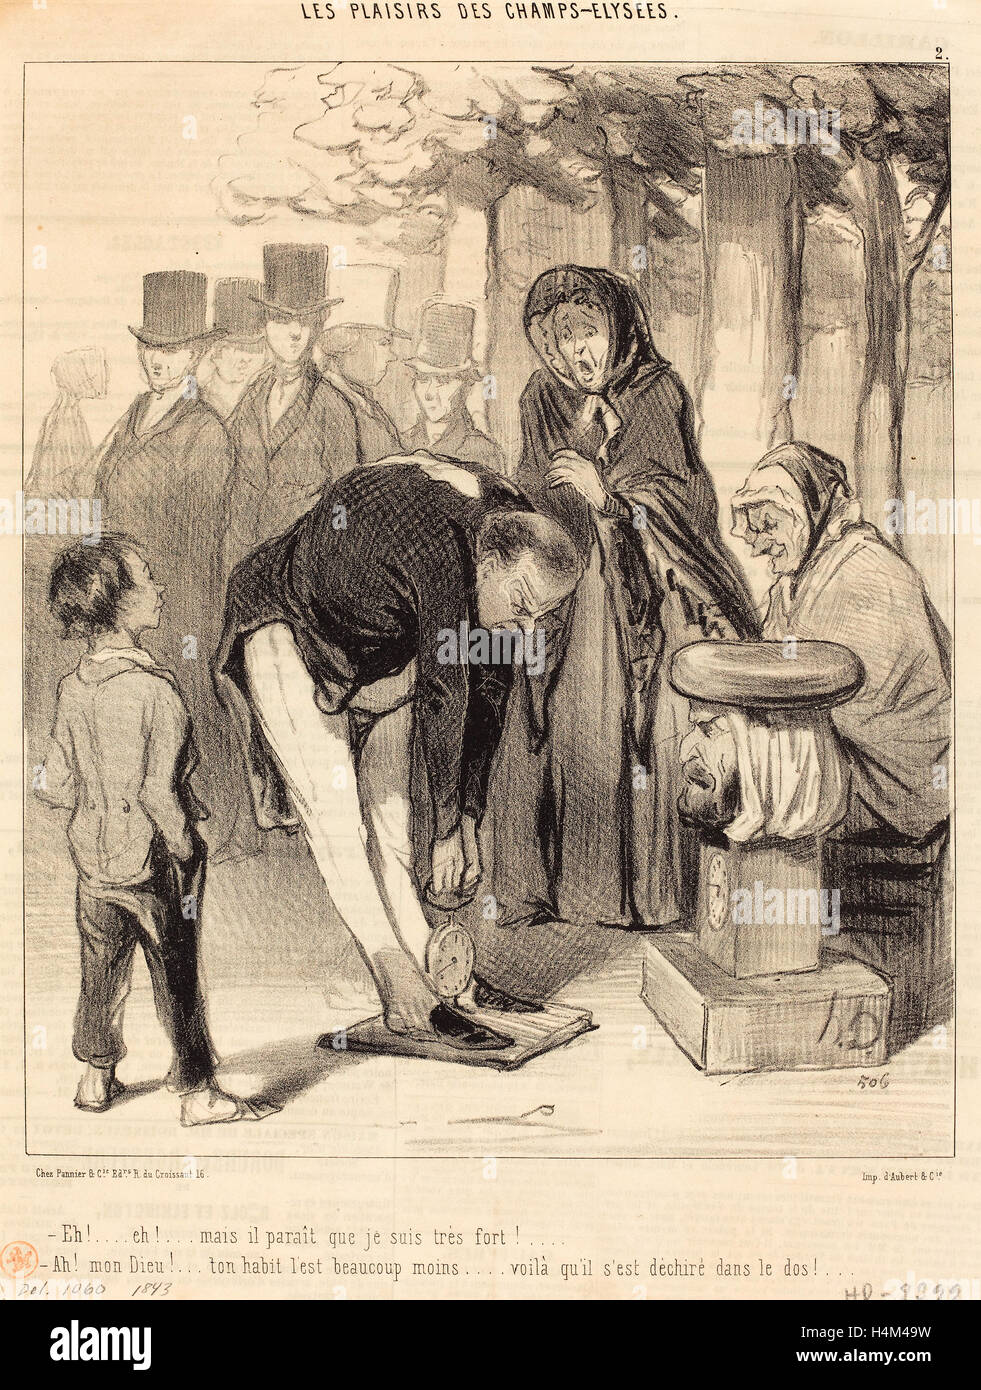 Honoré Daumier (francese, 1808 - 1879), eh! Eh! Mais il parait que, 1843, litografia su carta da giornale Foto Stock